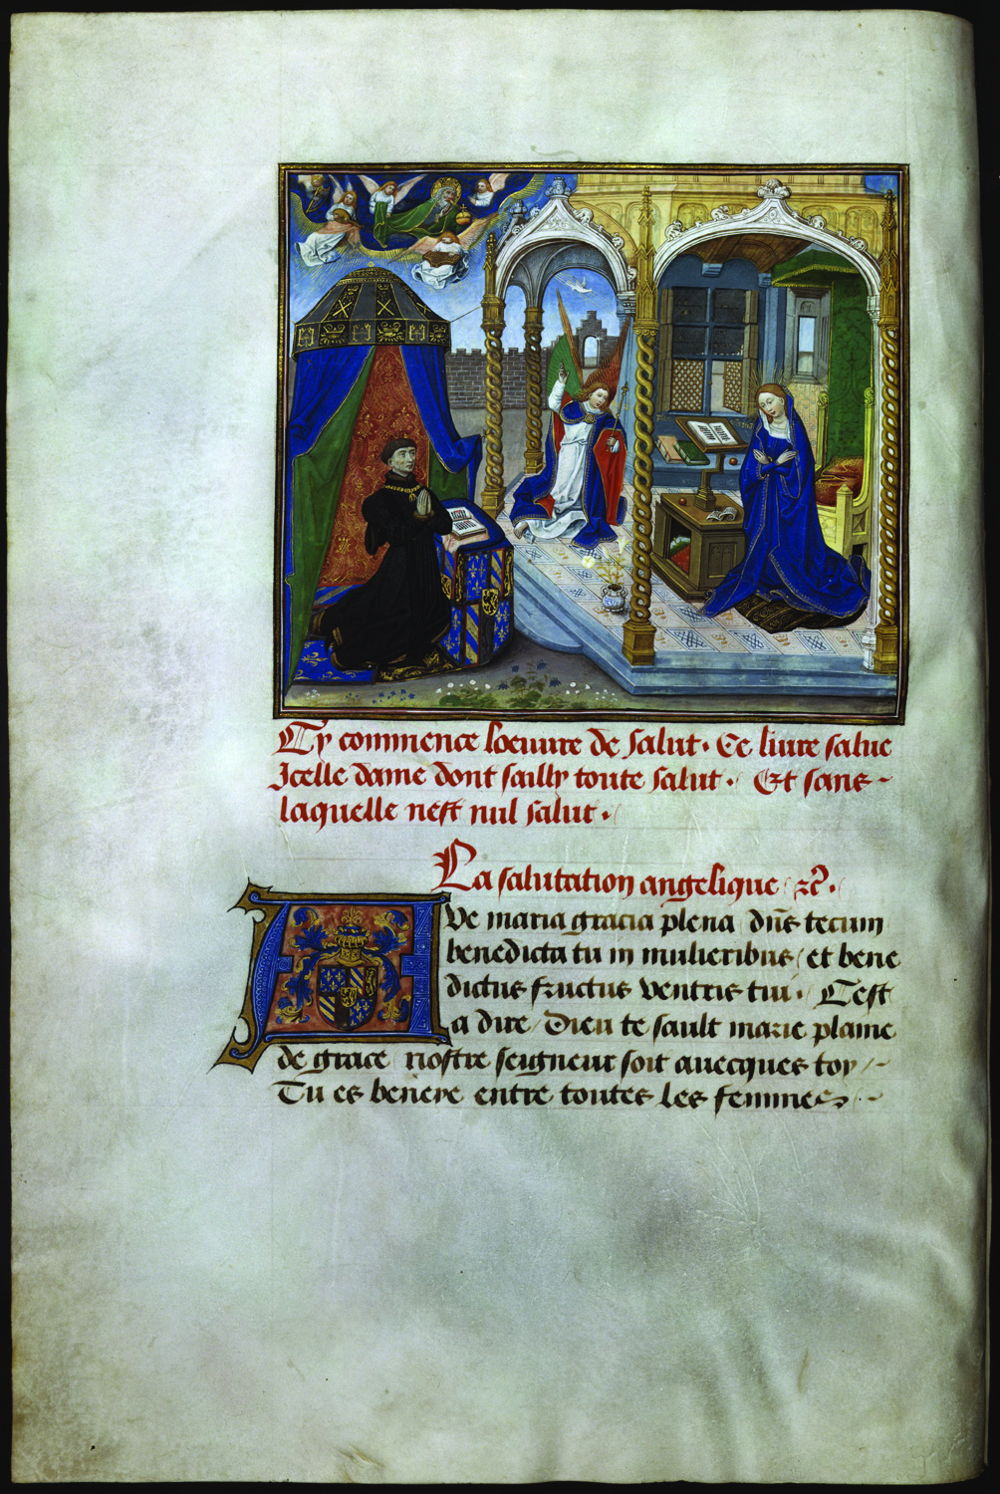 

Filips de Goede in gebed voor de Annunciatie
miniatuur van Willem Vrelant in de Traité sur la salutation angélique 
KBR- ms. 9270 – folio 2 verso